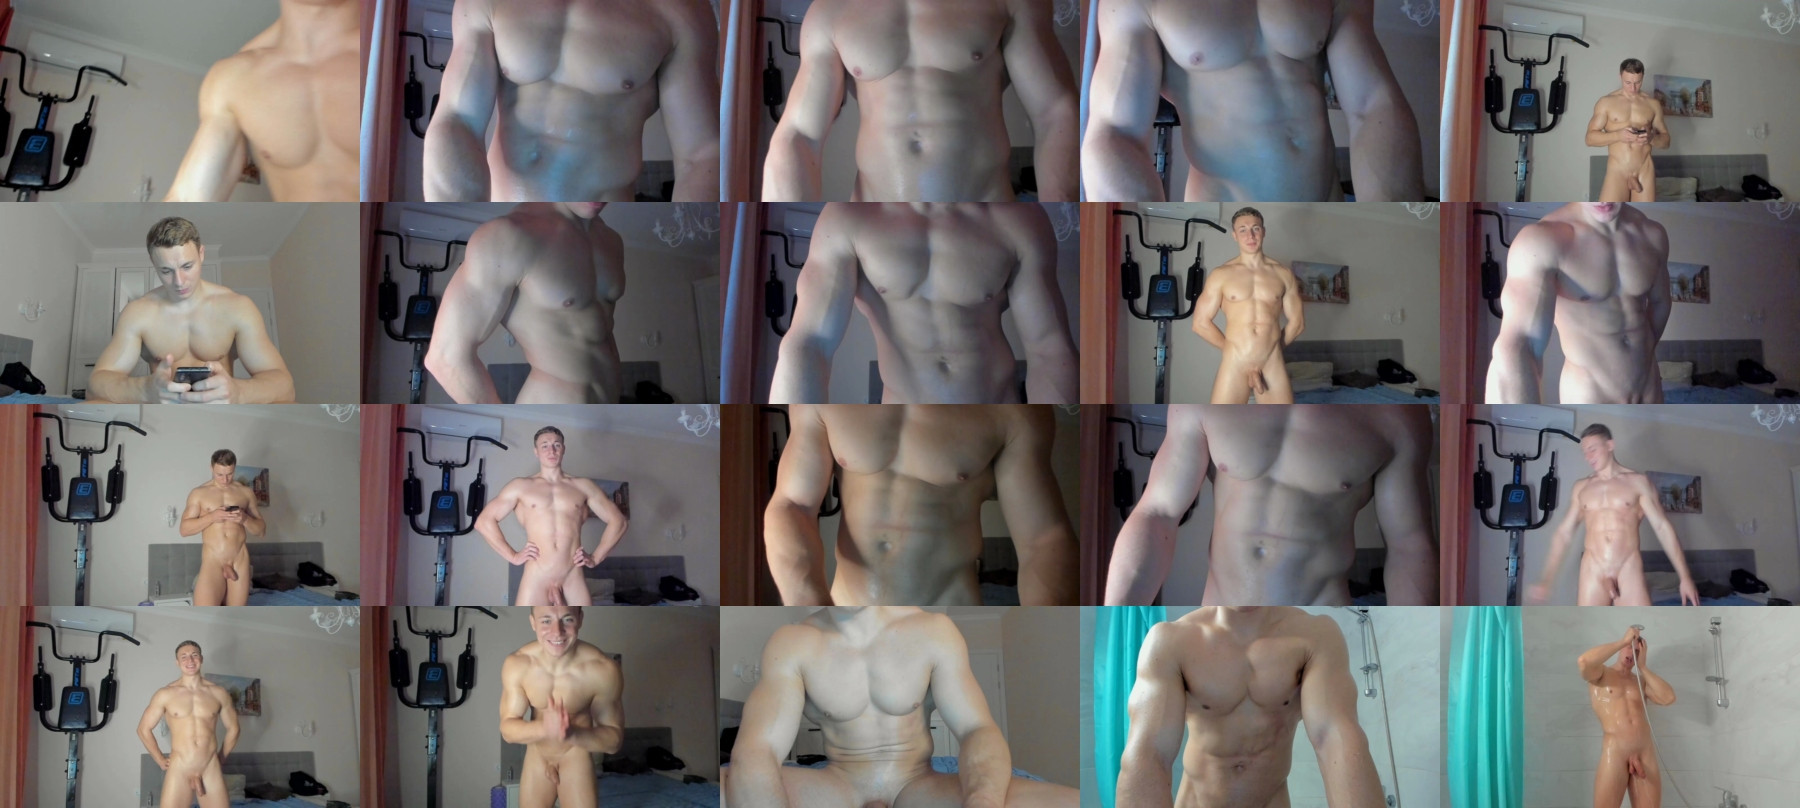 O_R_B_I_T  14-04-2021 Male Nude